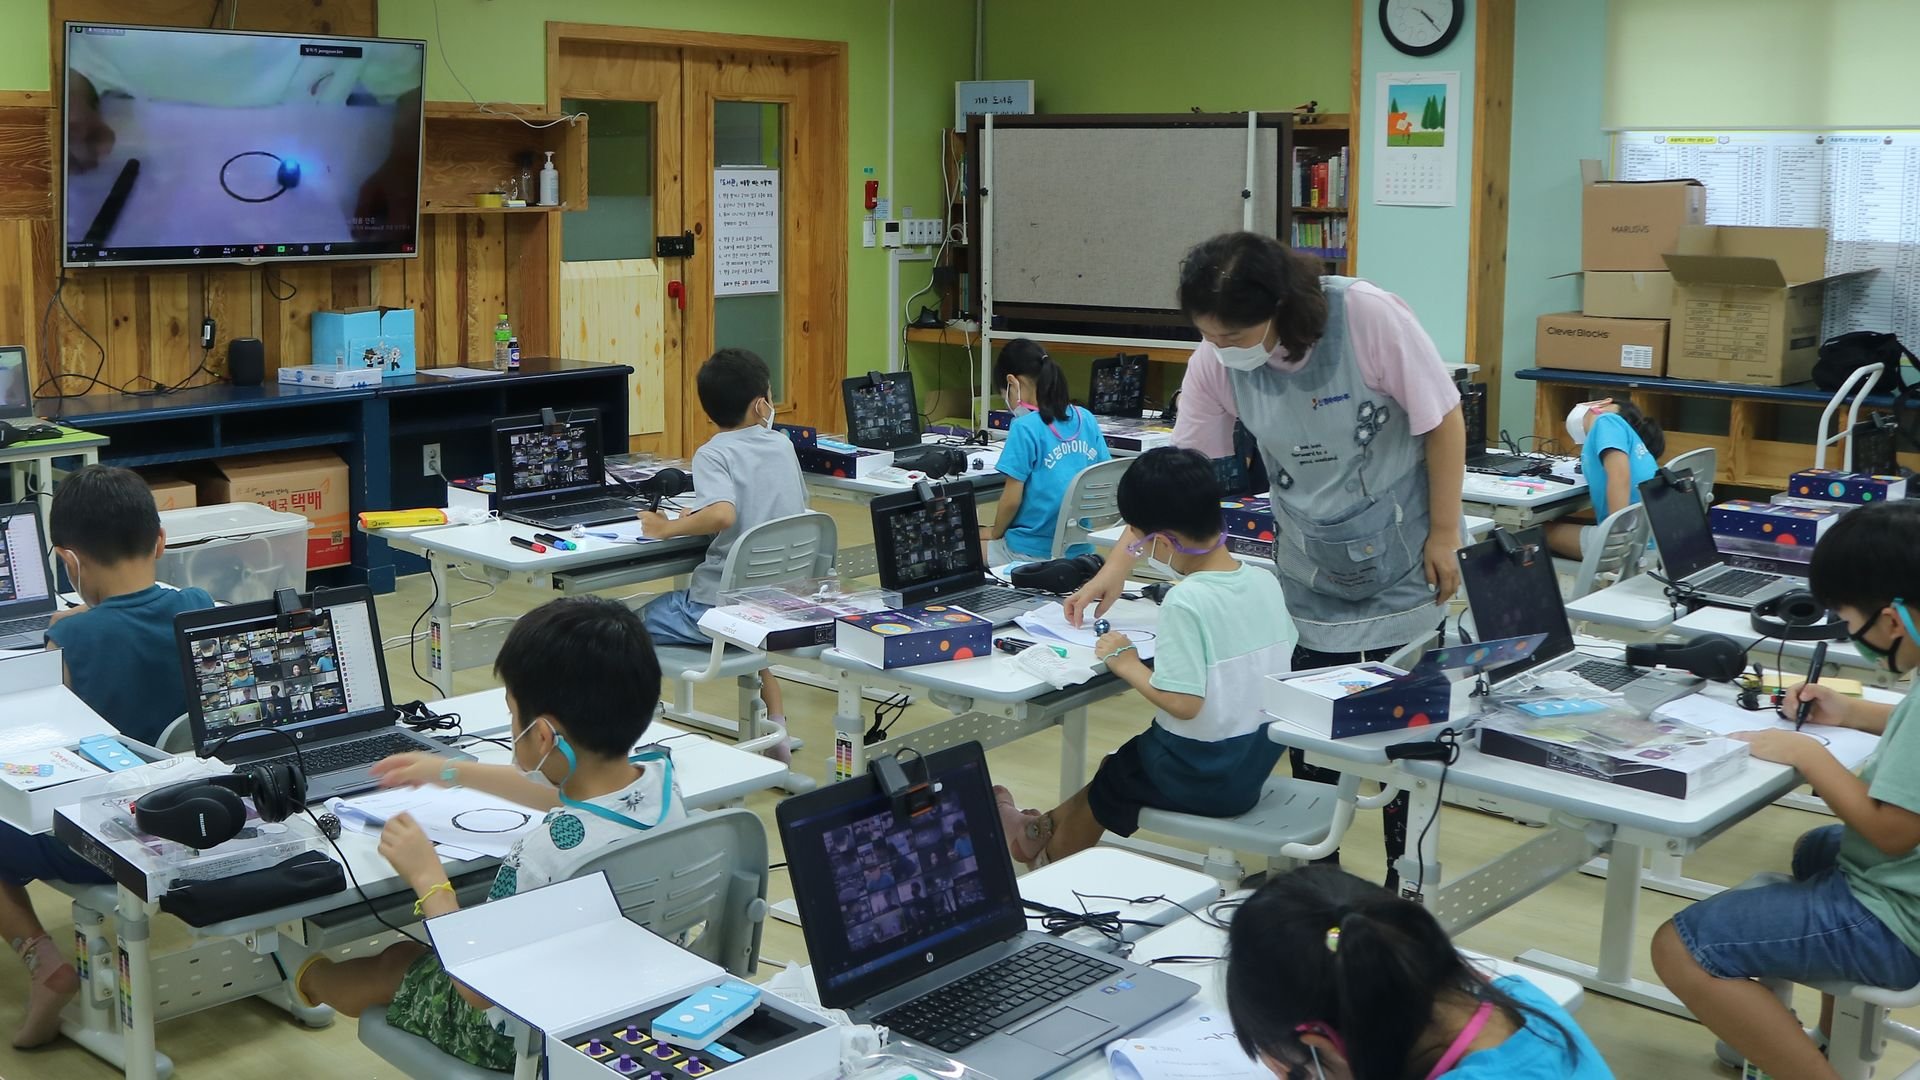 children sitting at desks in classroom with teacher